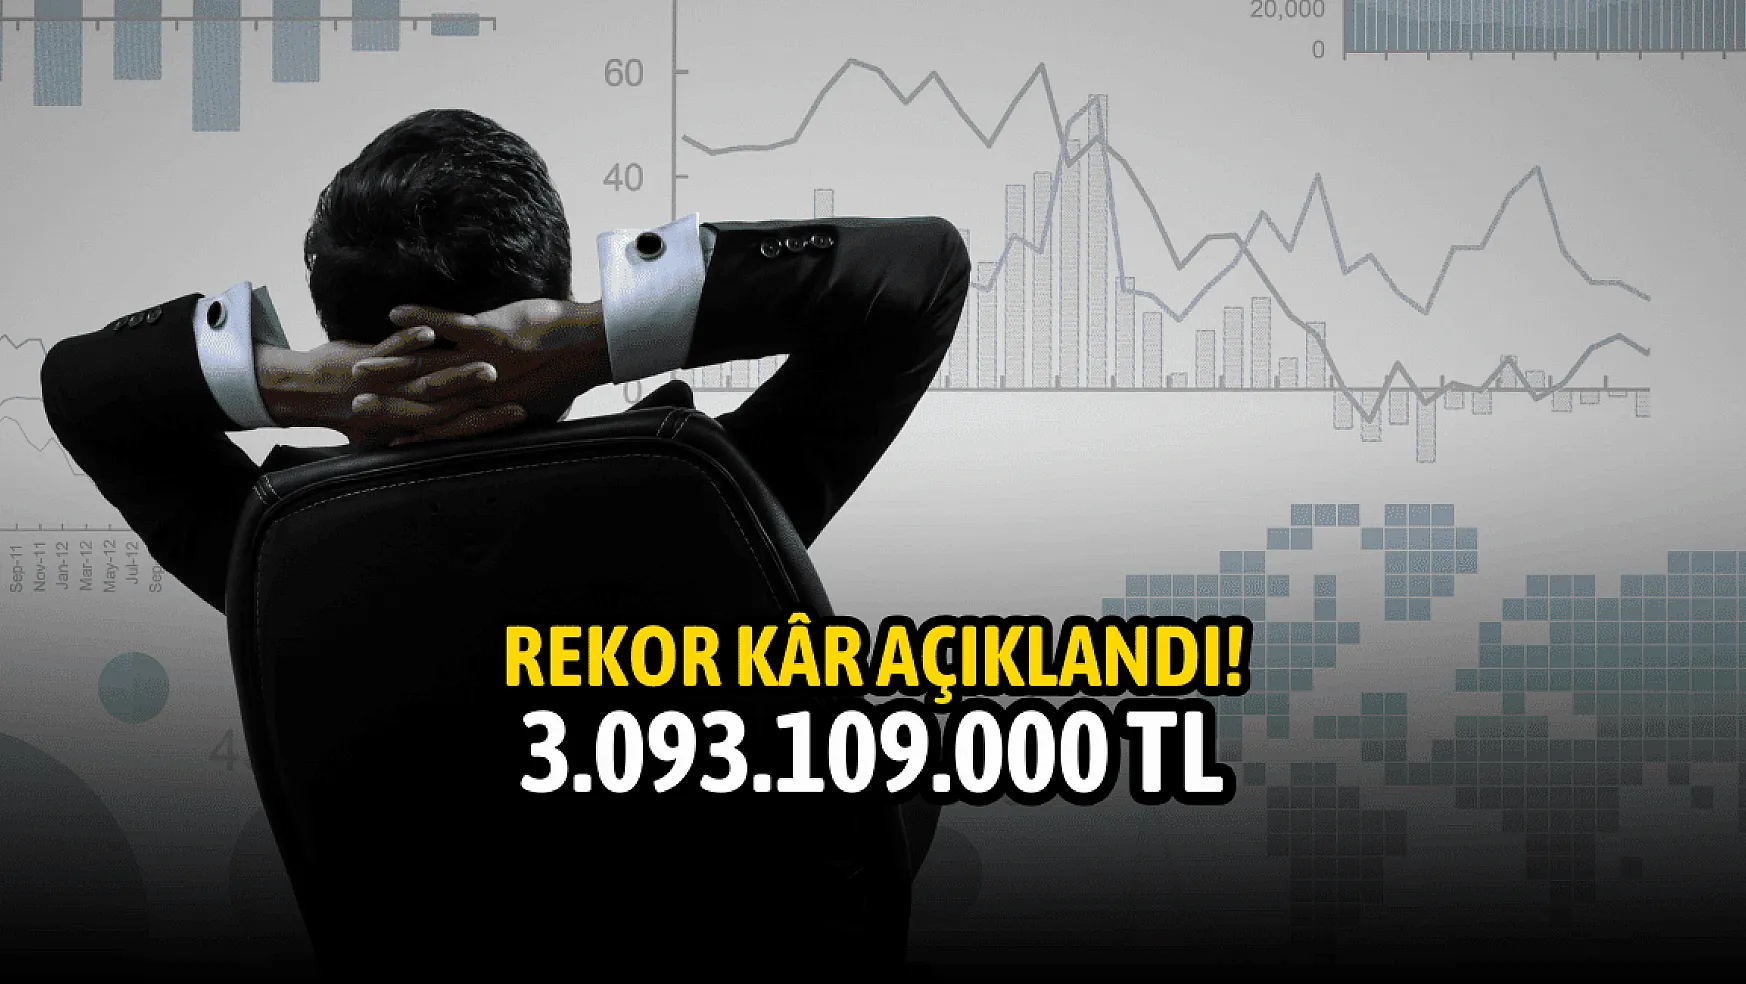 Yatırımcısı mutlu! Şirket 3.093.109.000 TL kâr açıkladı!